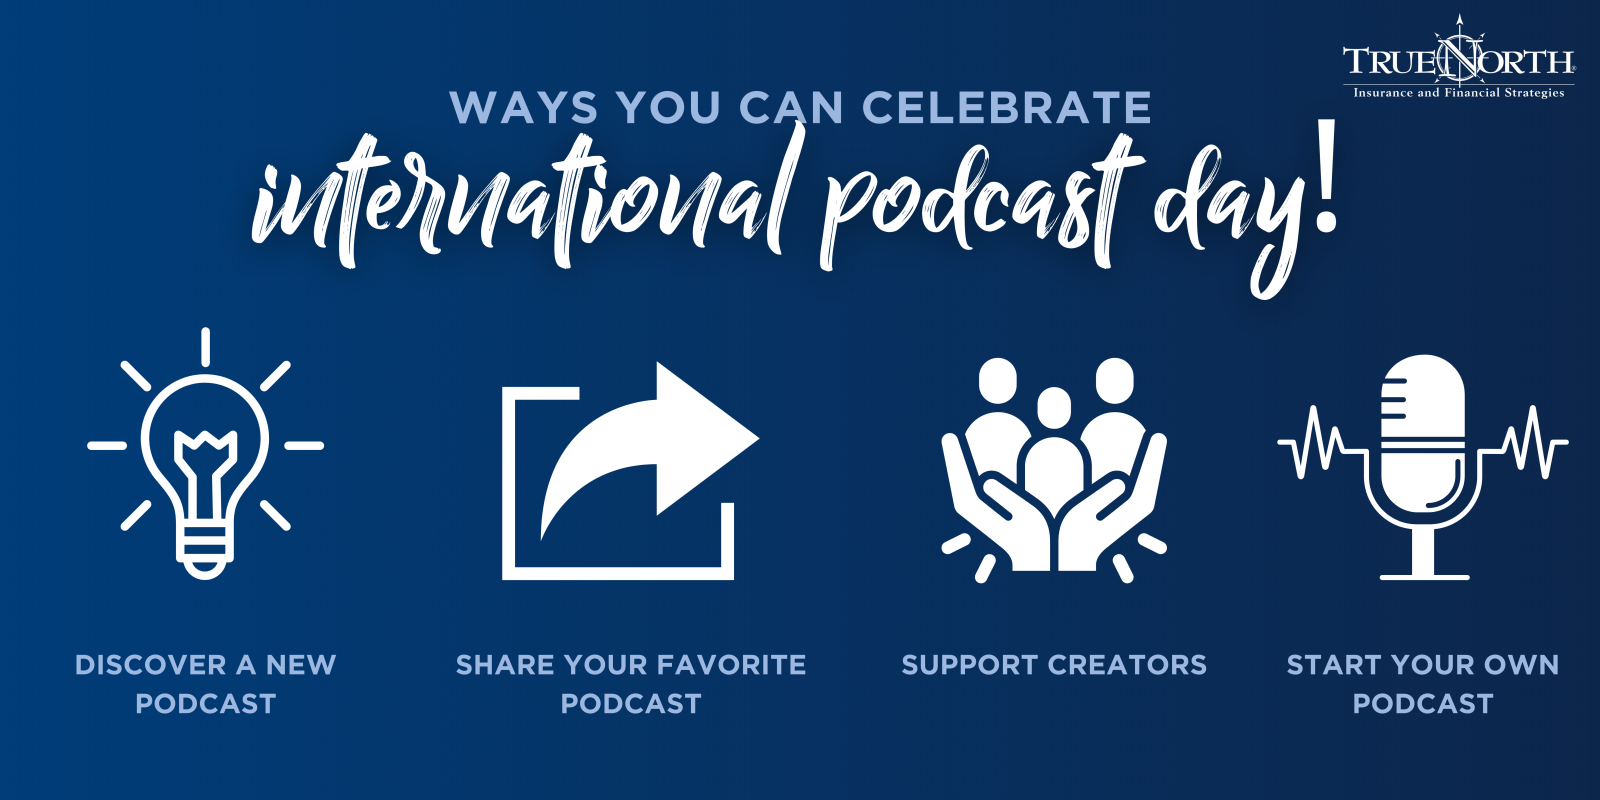 Ways to celebrate International Podcast Day